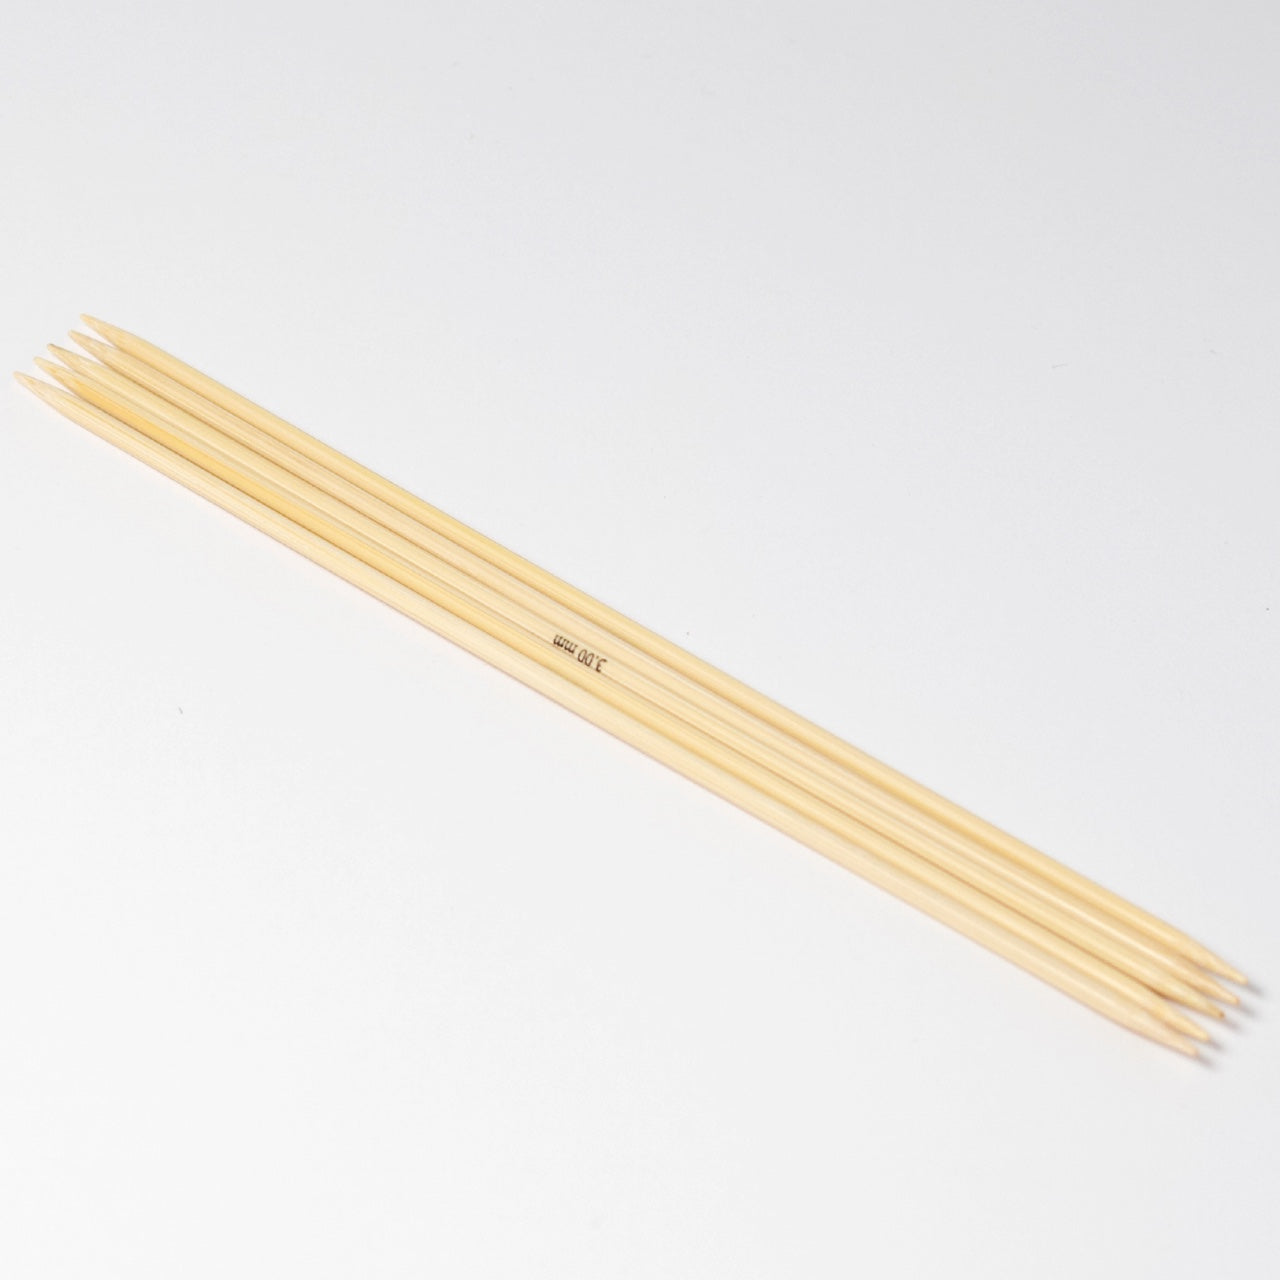 Hjertegarn // STYLE BAMBOO // Strømpepinde 20 cm i bambus str. 3 mm